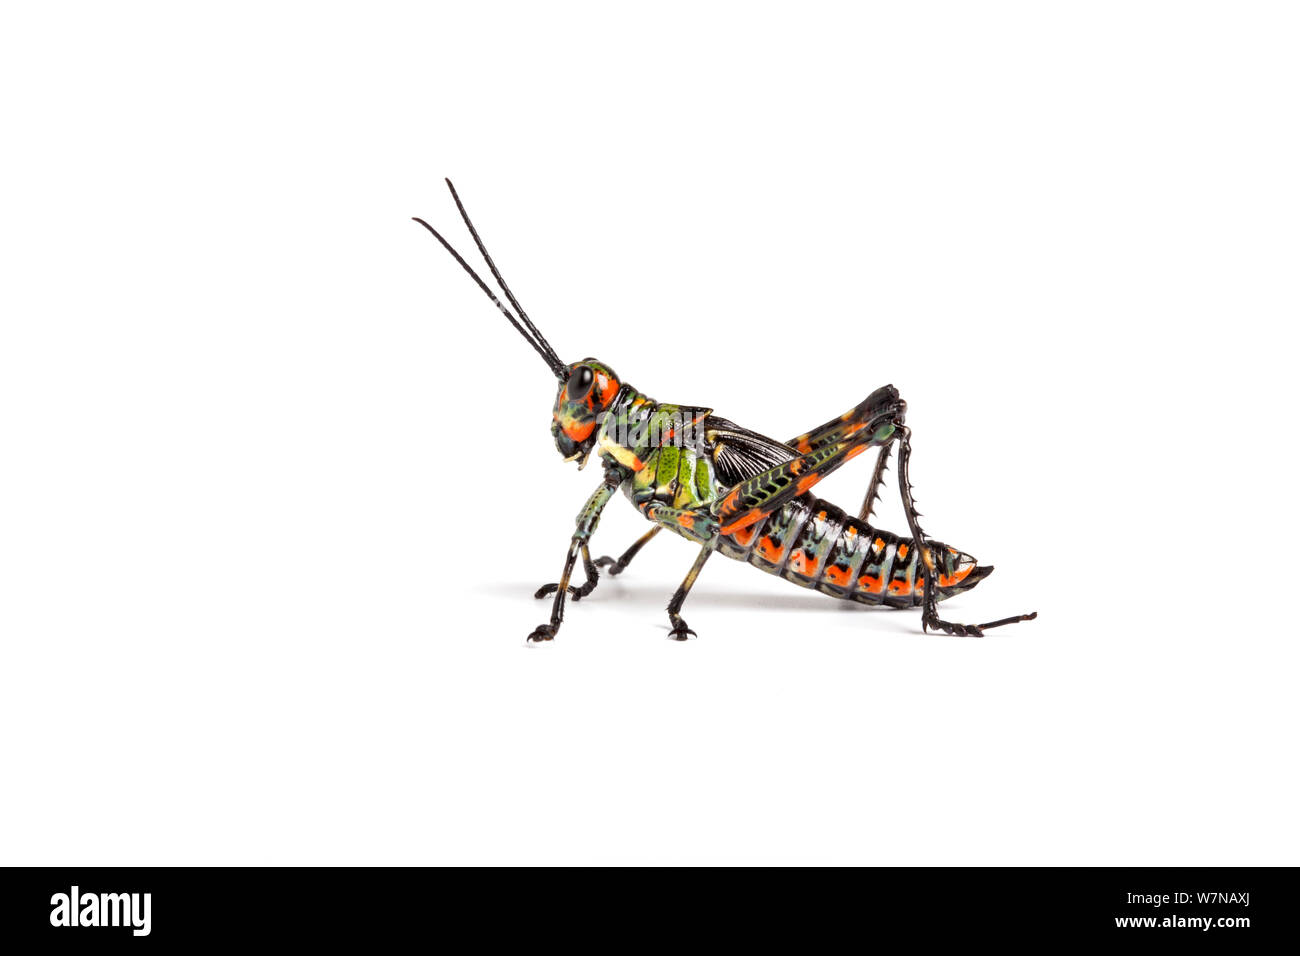 Ecuadorian lubber grasshopper (Chromacris psittacus pacificus), captive, occurs Ecuador. Stock Photo